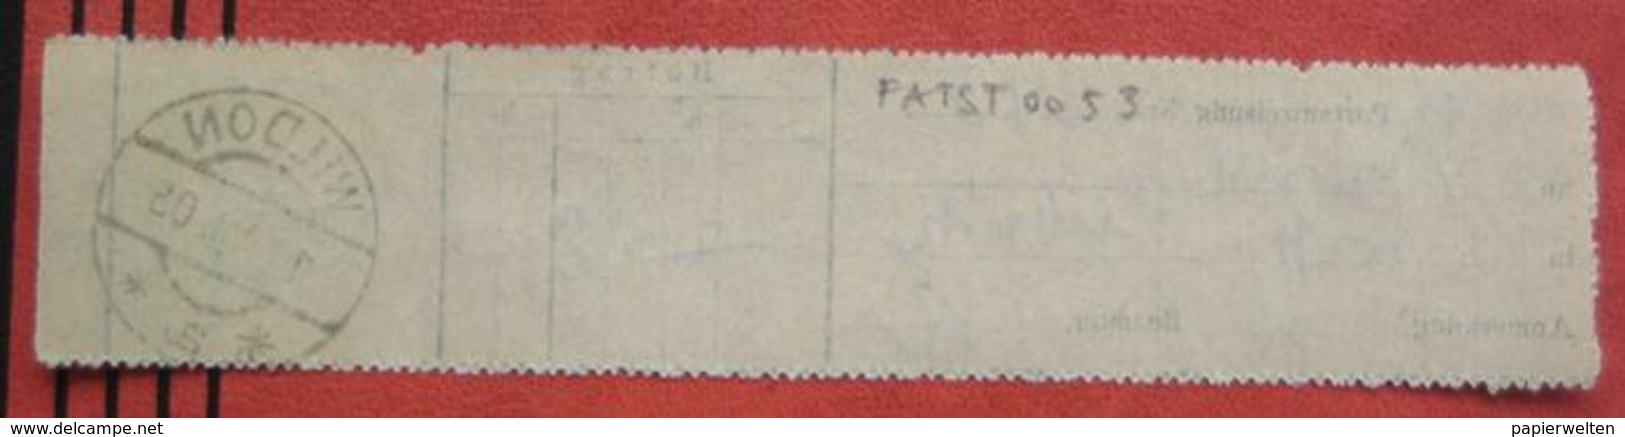 8410 Wildon - Aufgabeschein über Postanweisung 1905 - Macchine Per Obliterare (EMA)